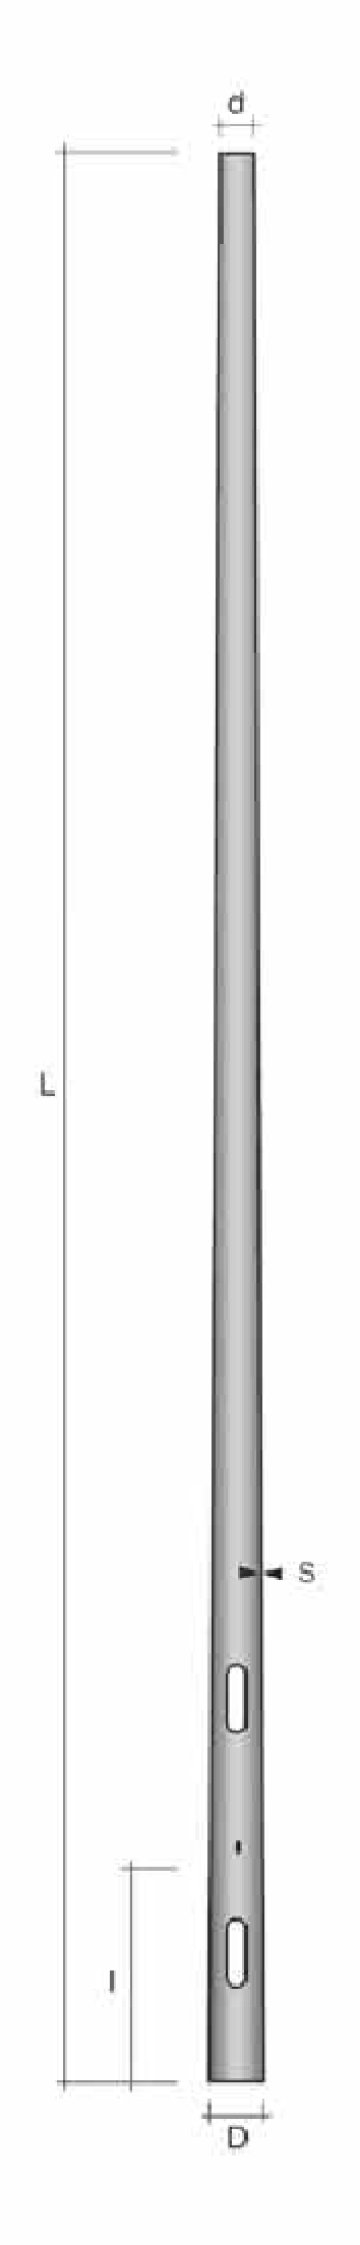 Stalp conic ingropat h=8.8m de la Metalsafe Lighting Srl